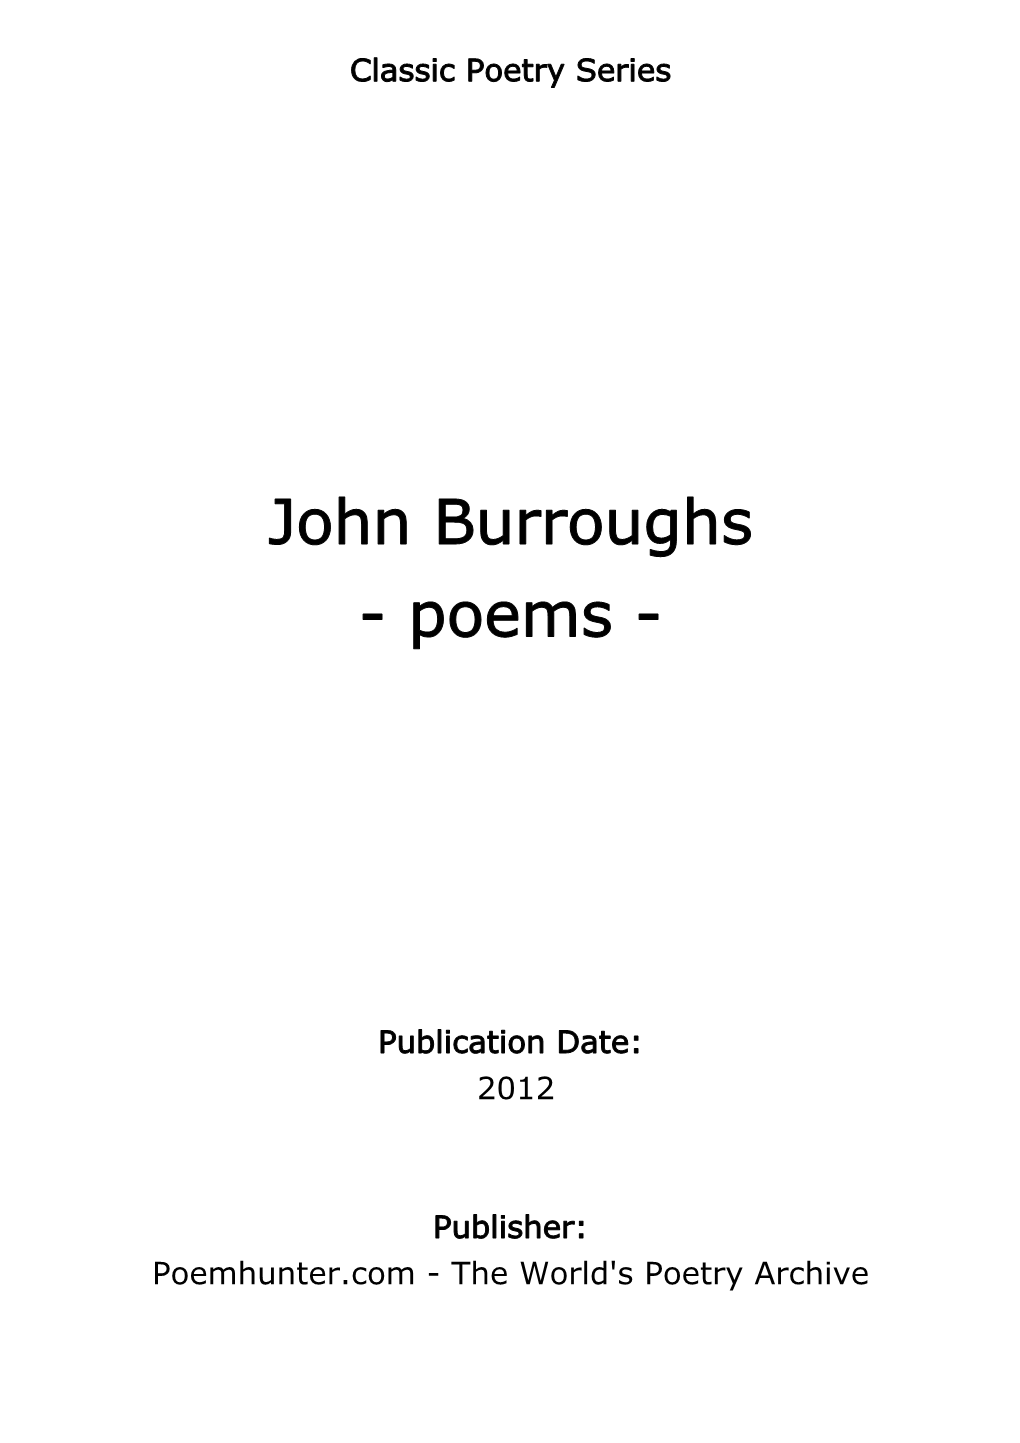 John Burroughs - Poems